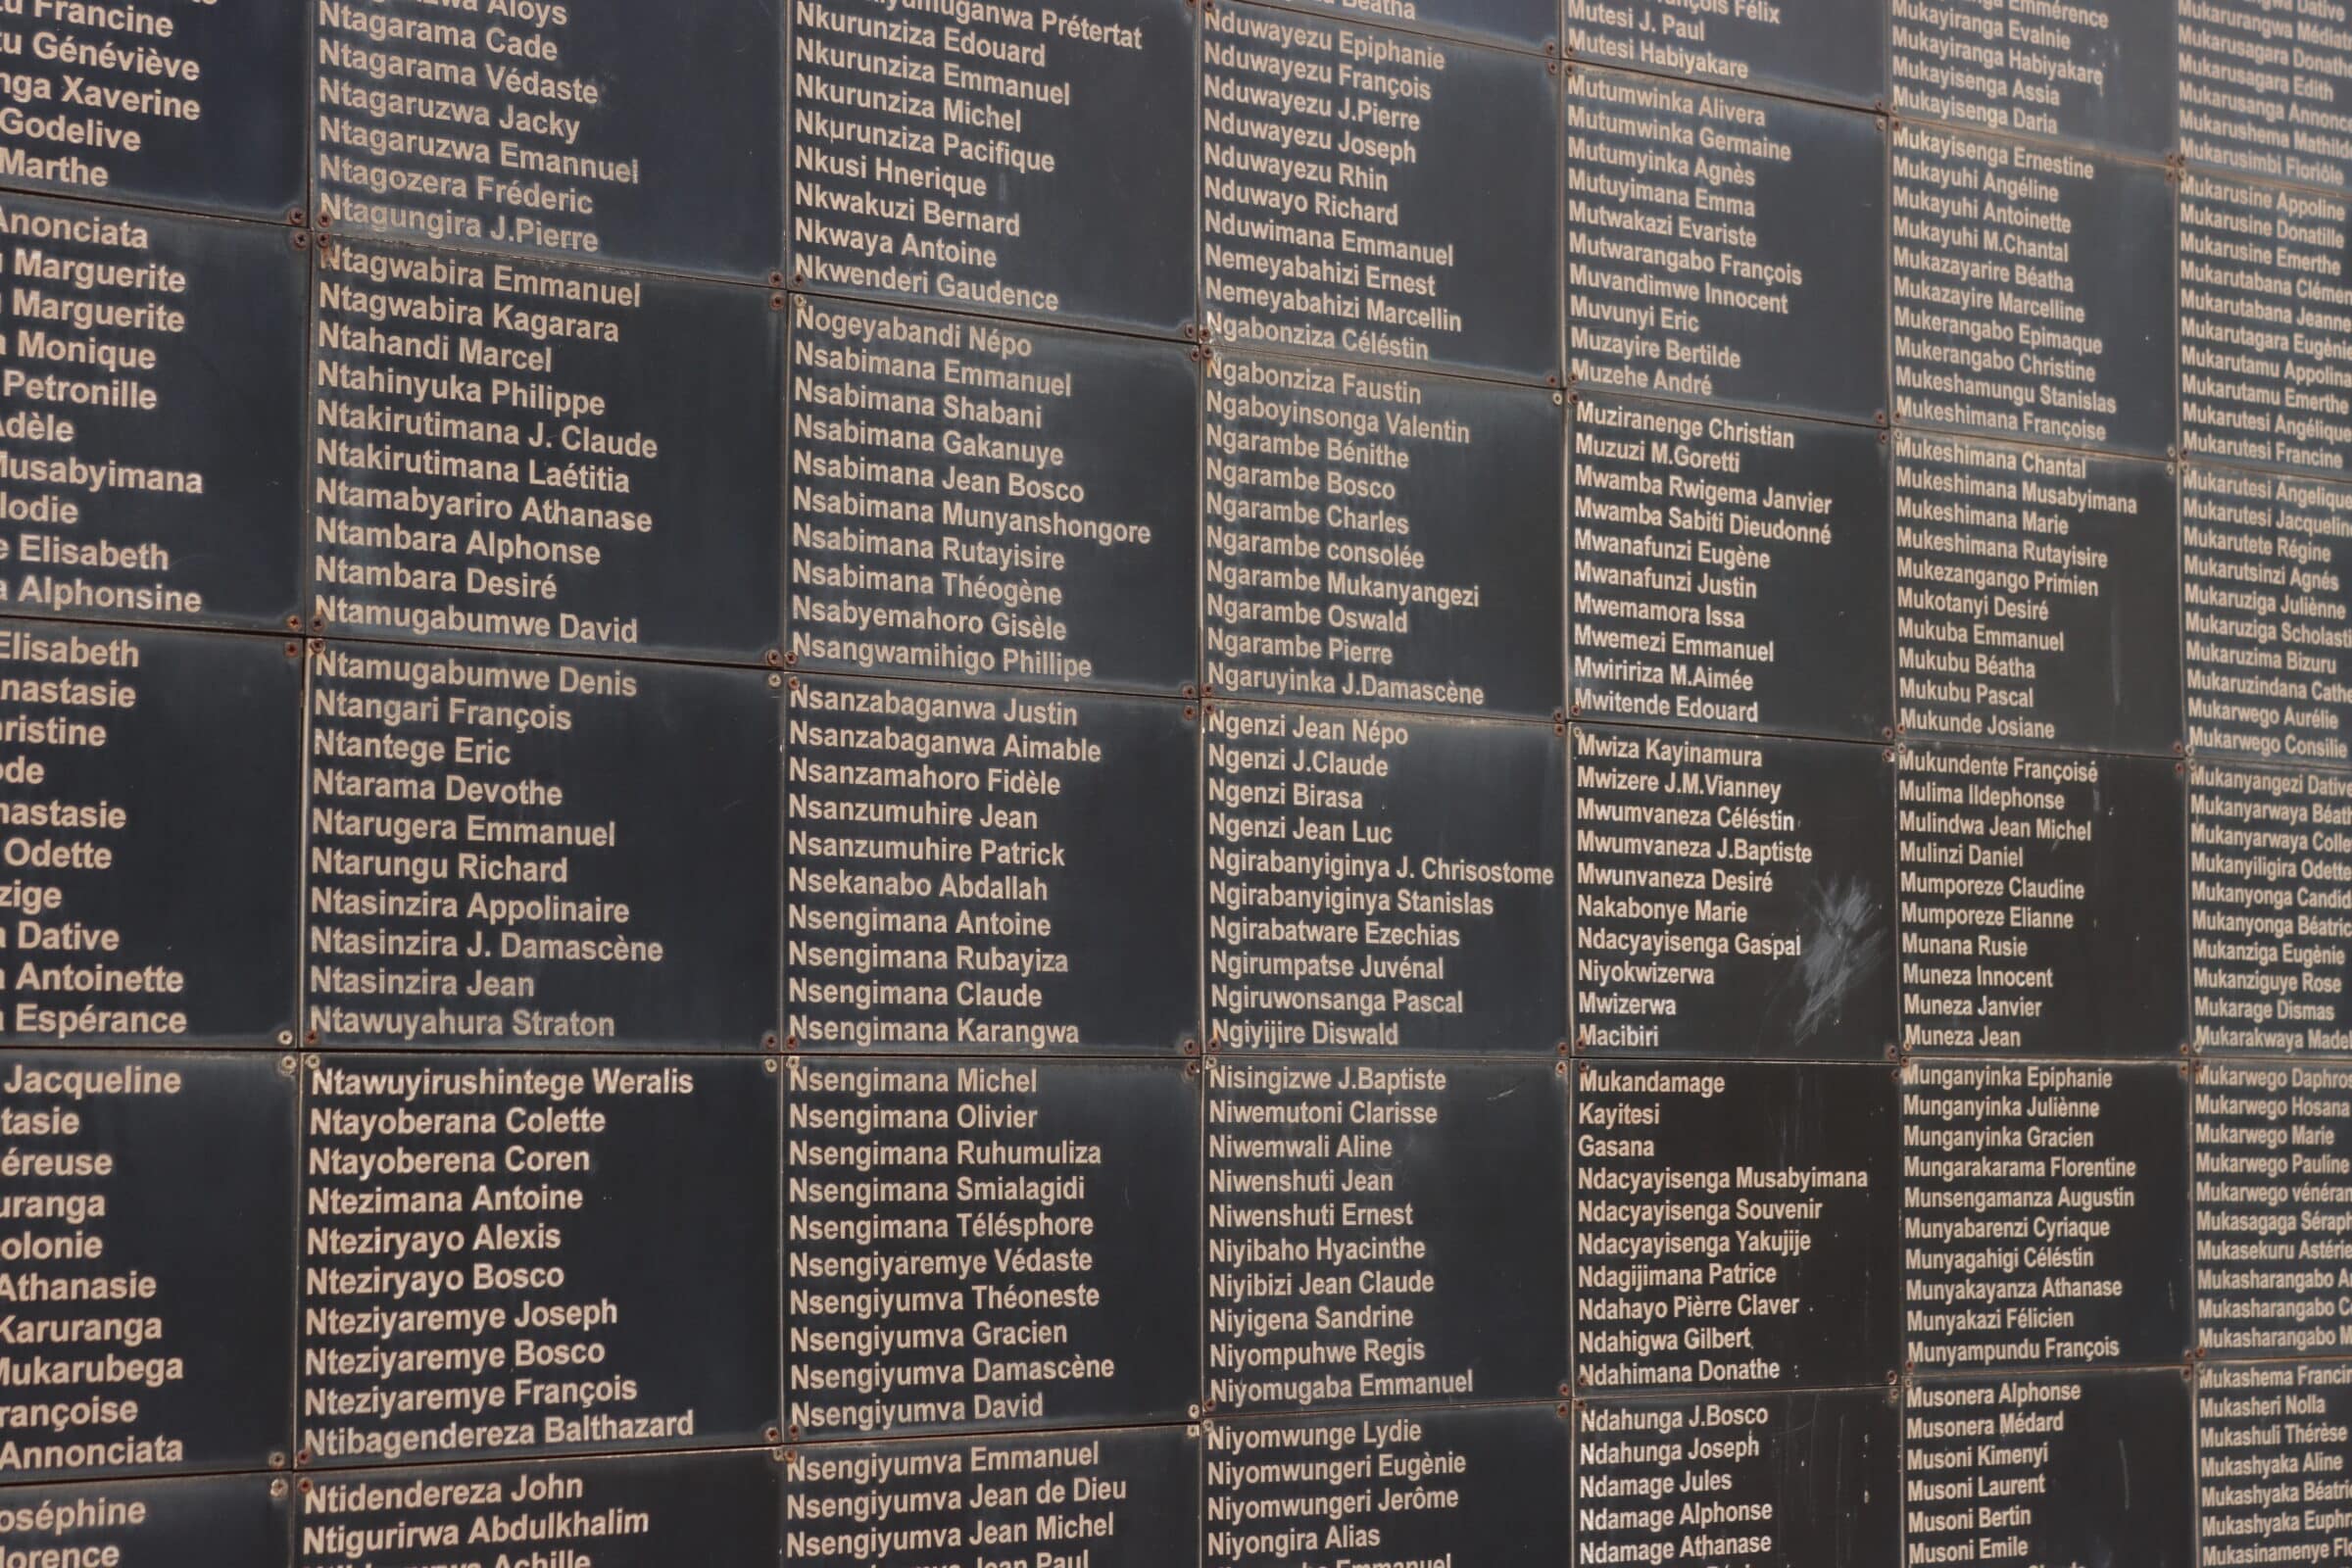 Namen der Opfer des Völkermords von 1994